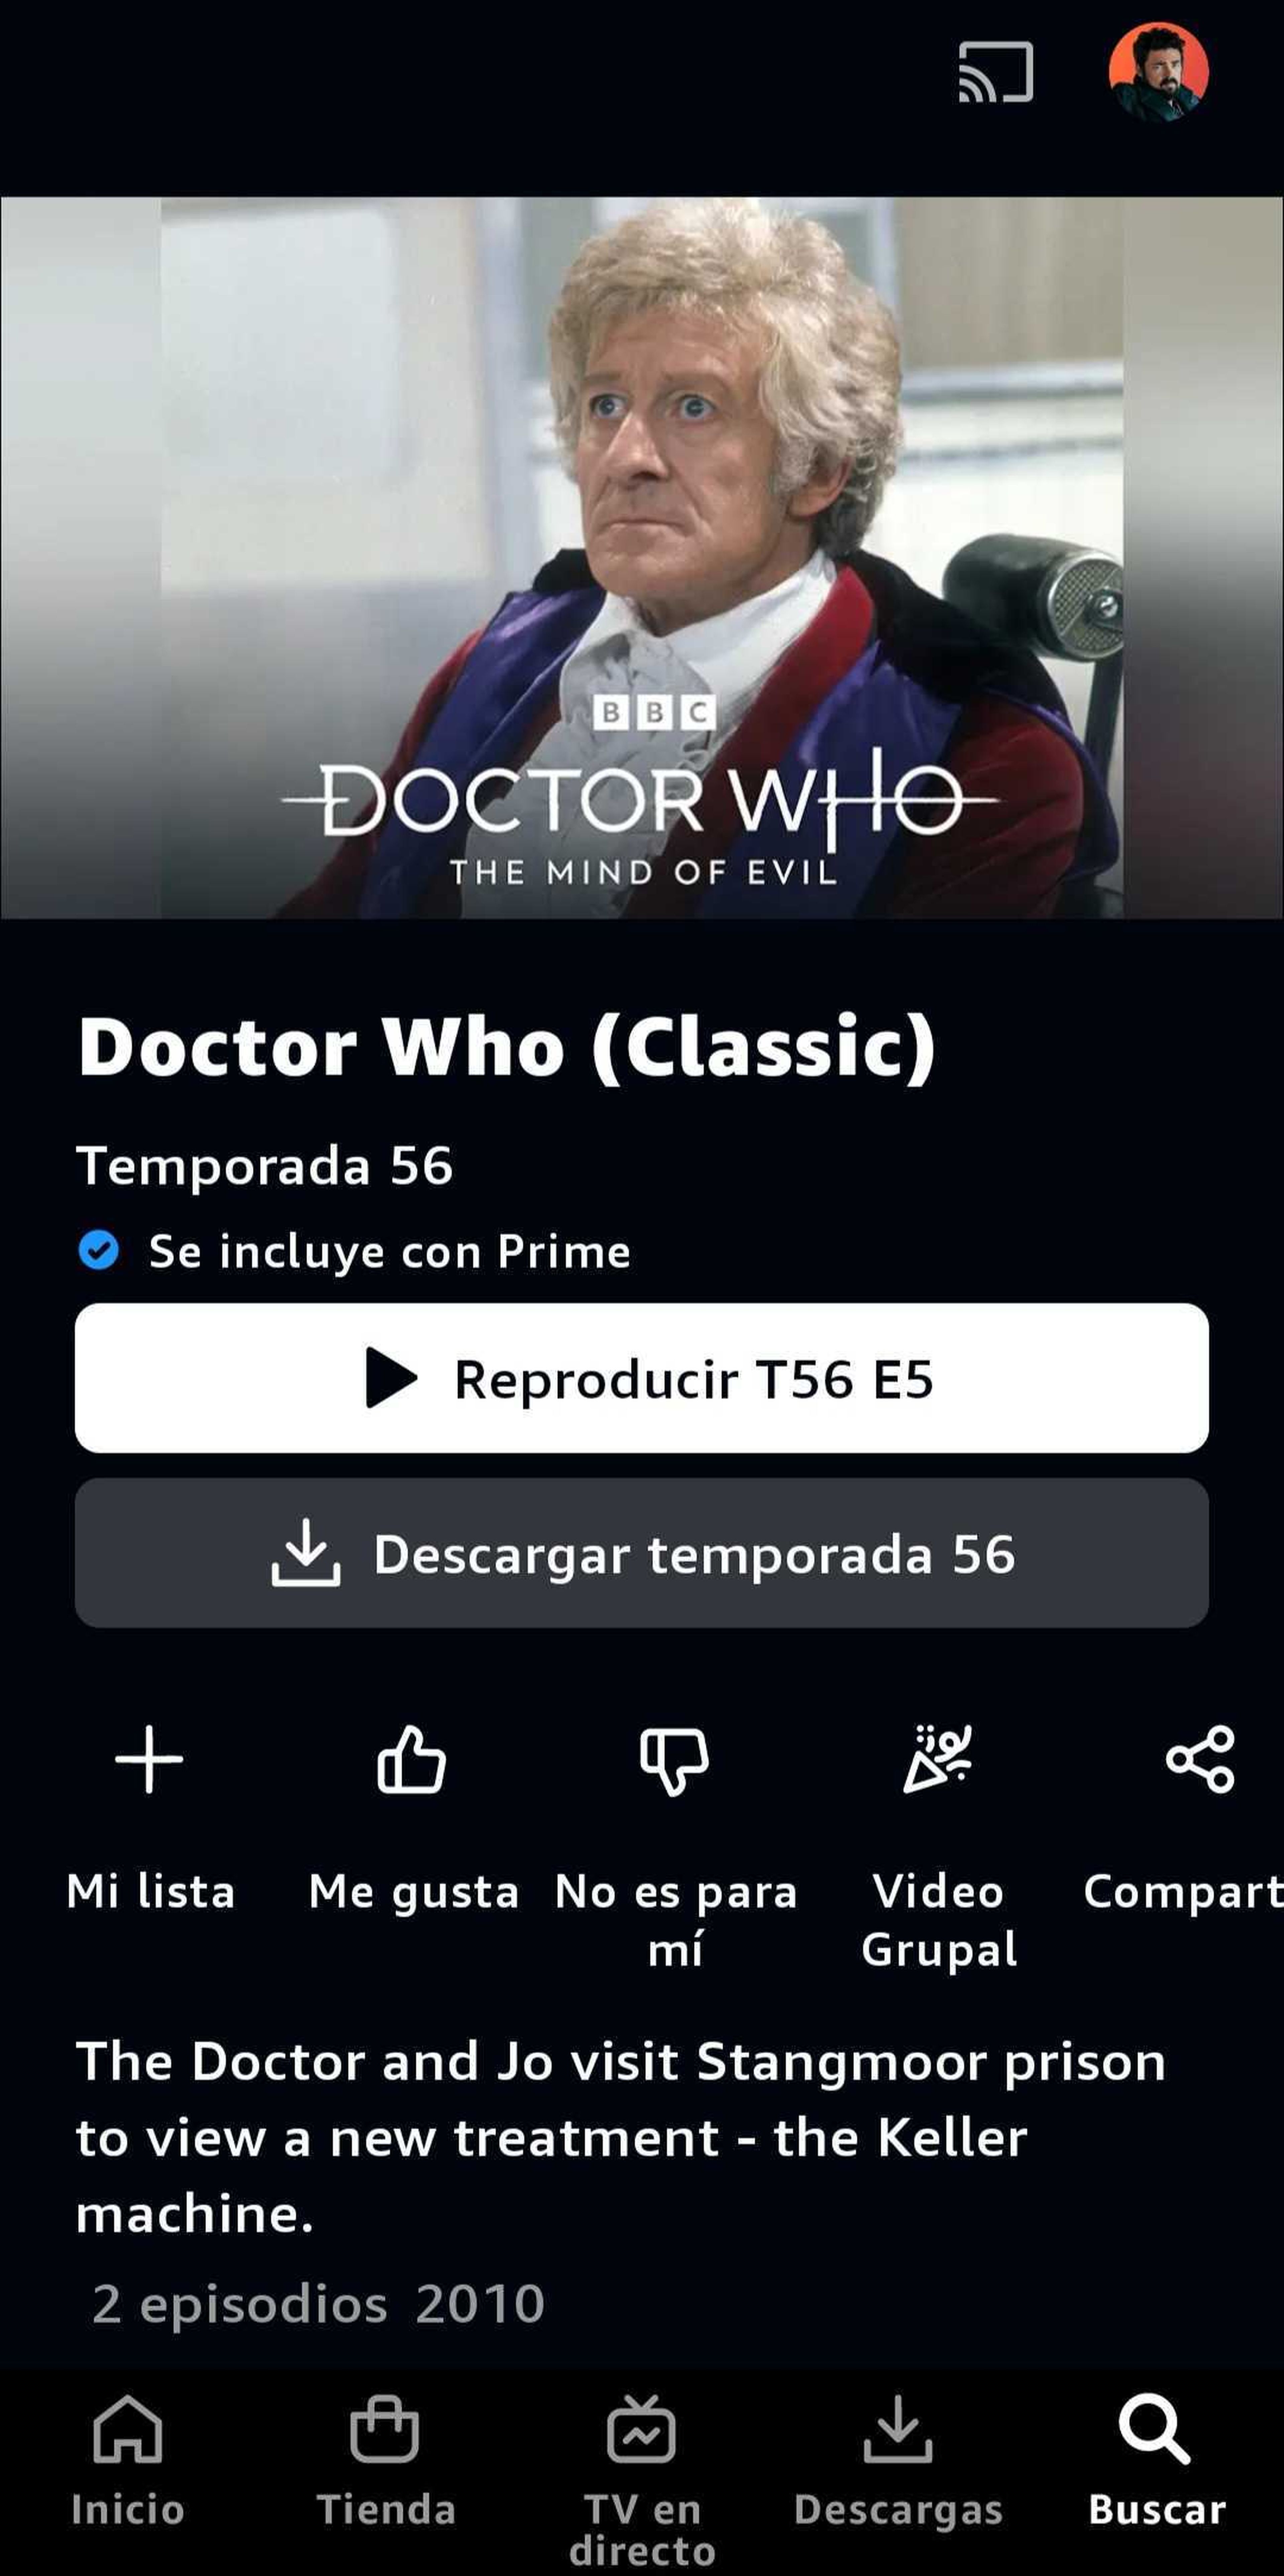 El error de Prime Video con Classic Doctor Who